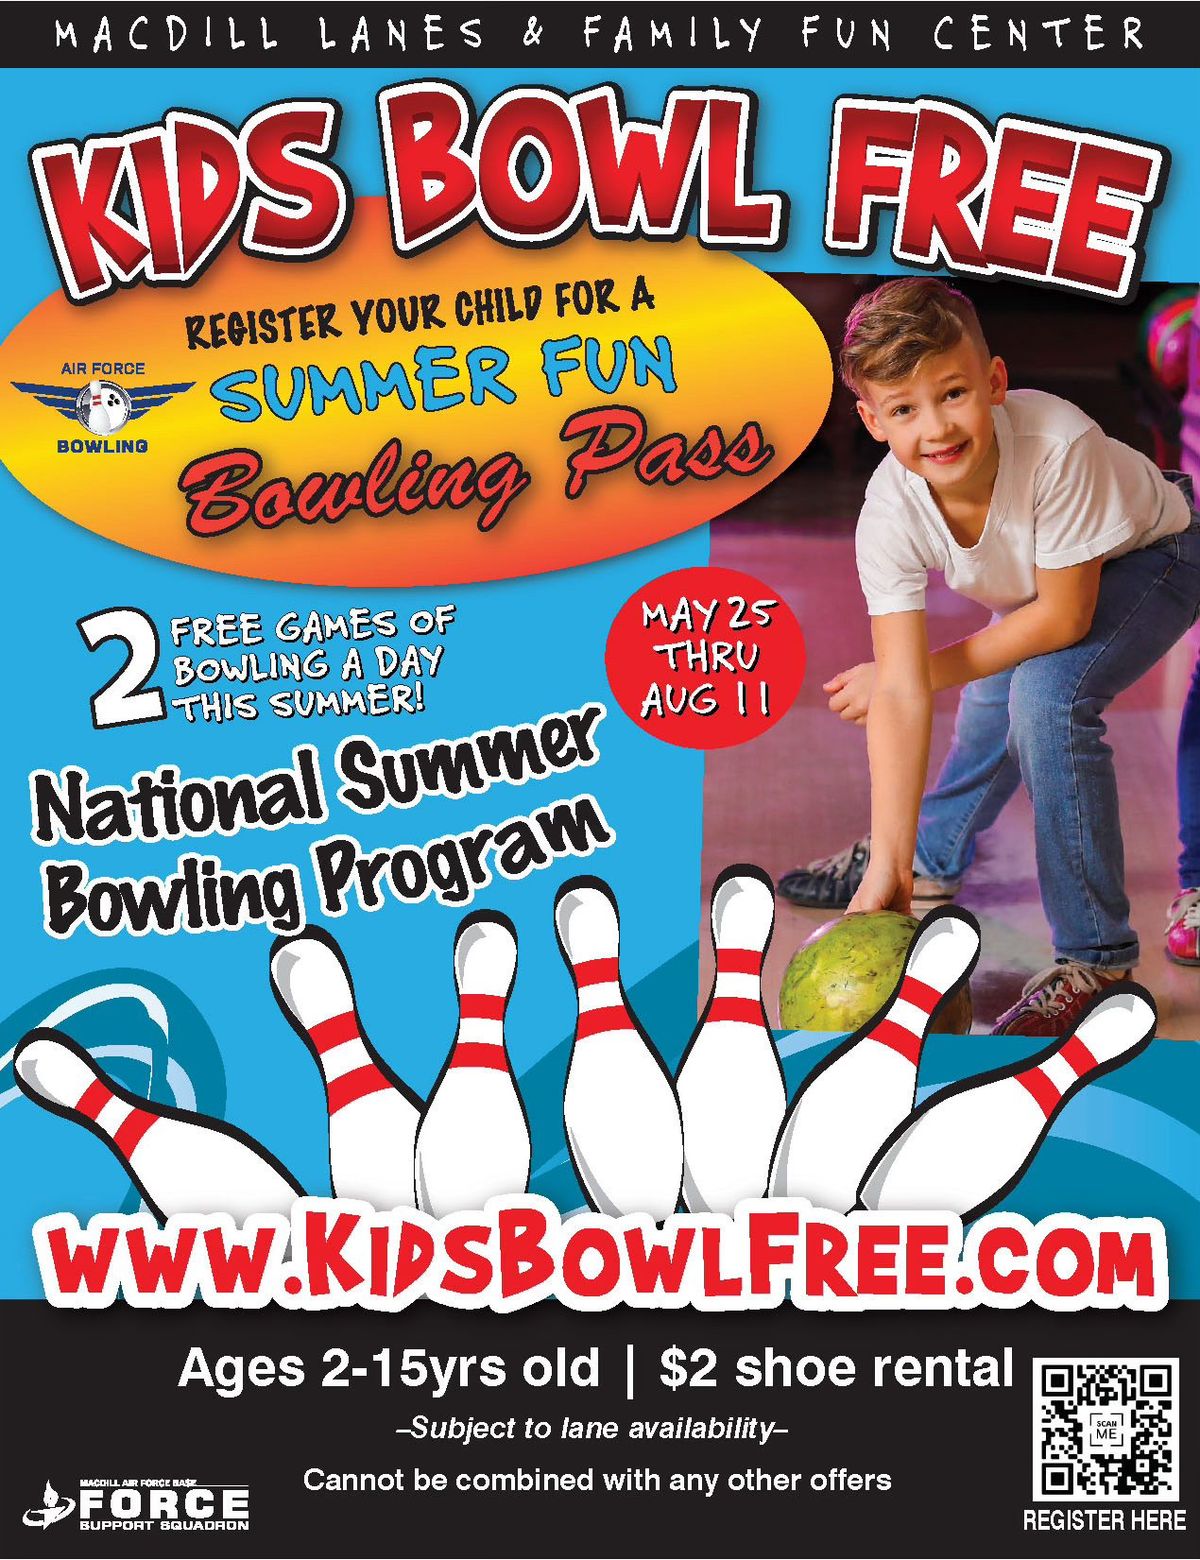 KIDS BOWL FREE SUMMER PROGRAM (MAY 25-AUG 11)